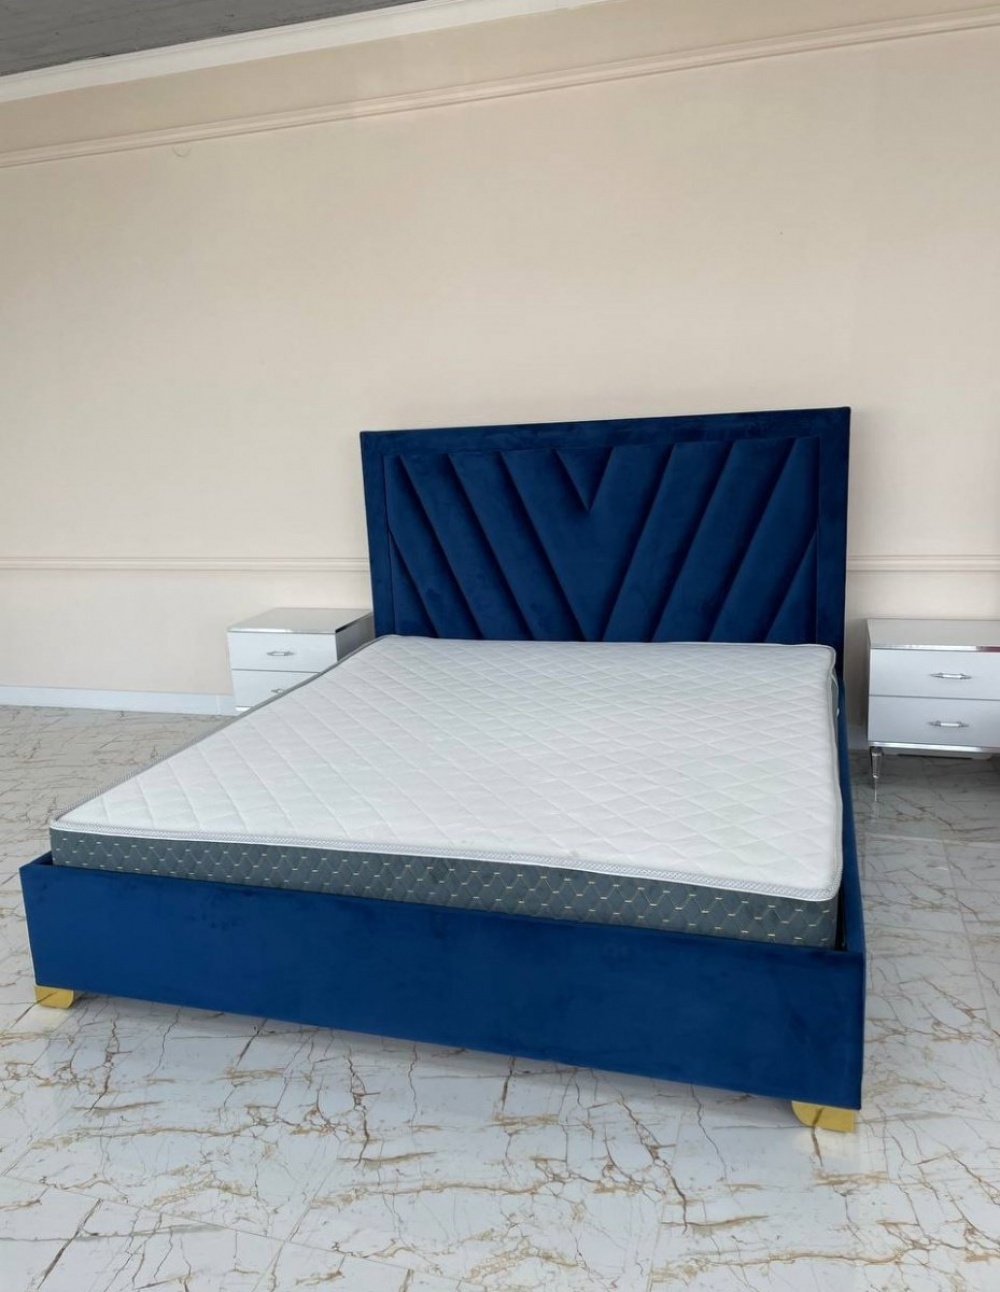 Кровать Viva